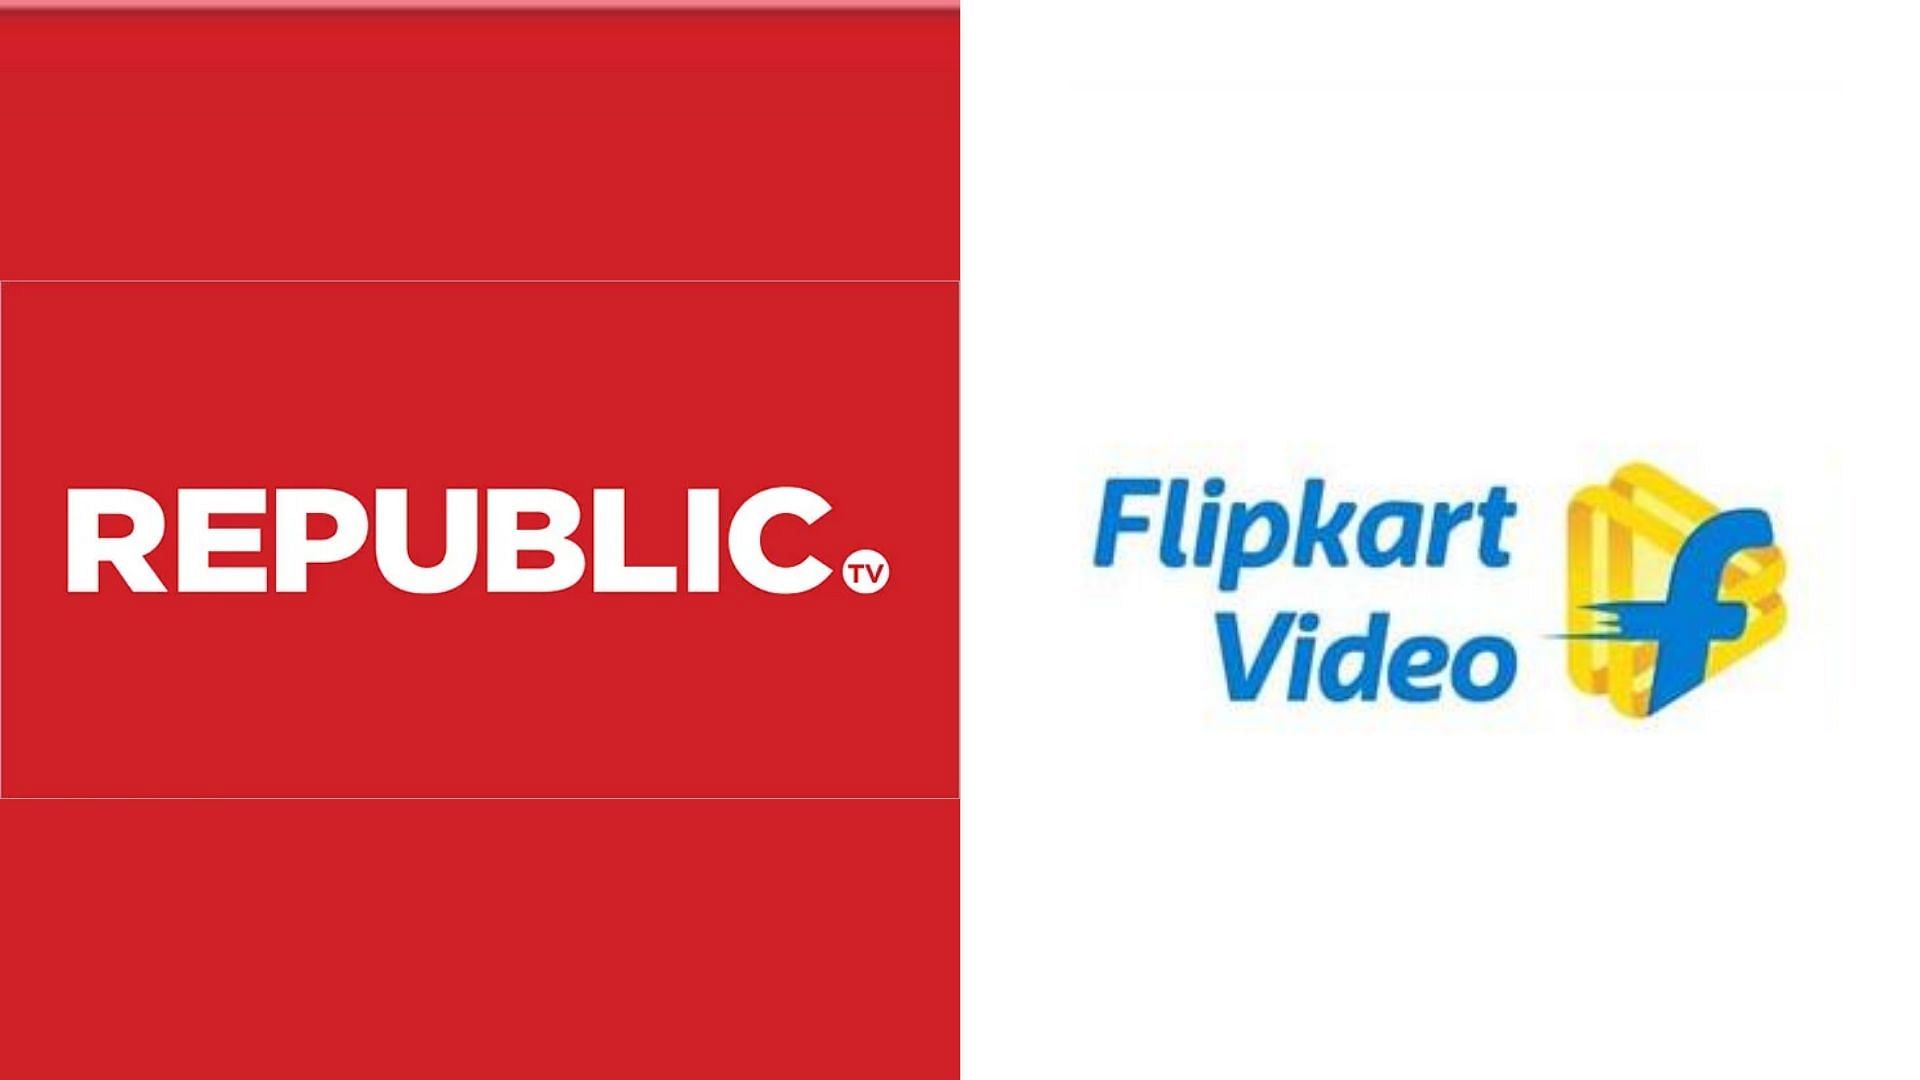 republic flipkart video?blur=25